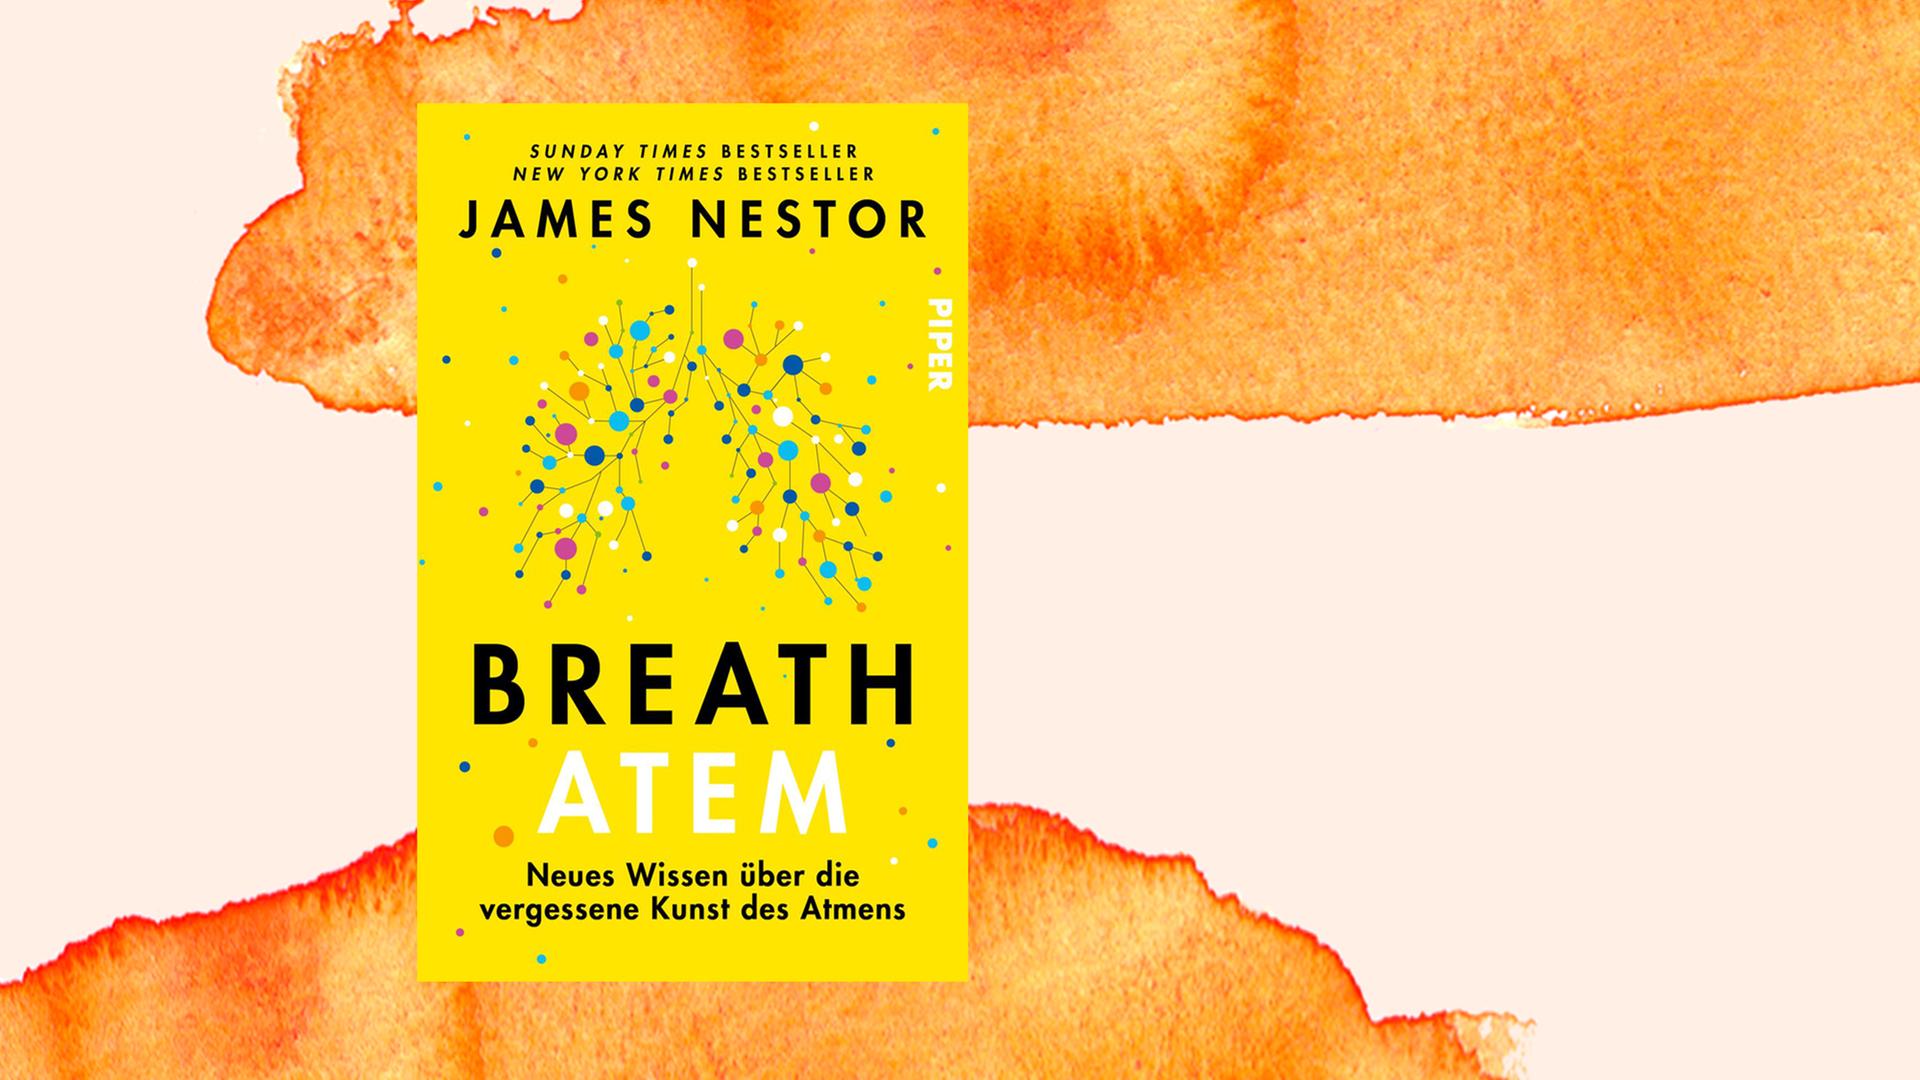 Das Cover zeigt auf knallig gelbem Grund die Visualisierung von Atem.